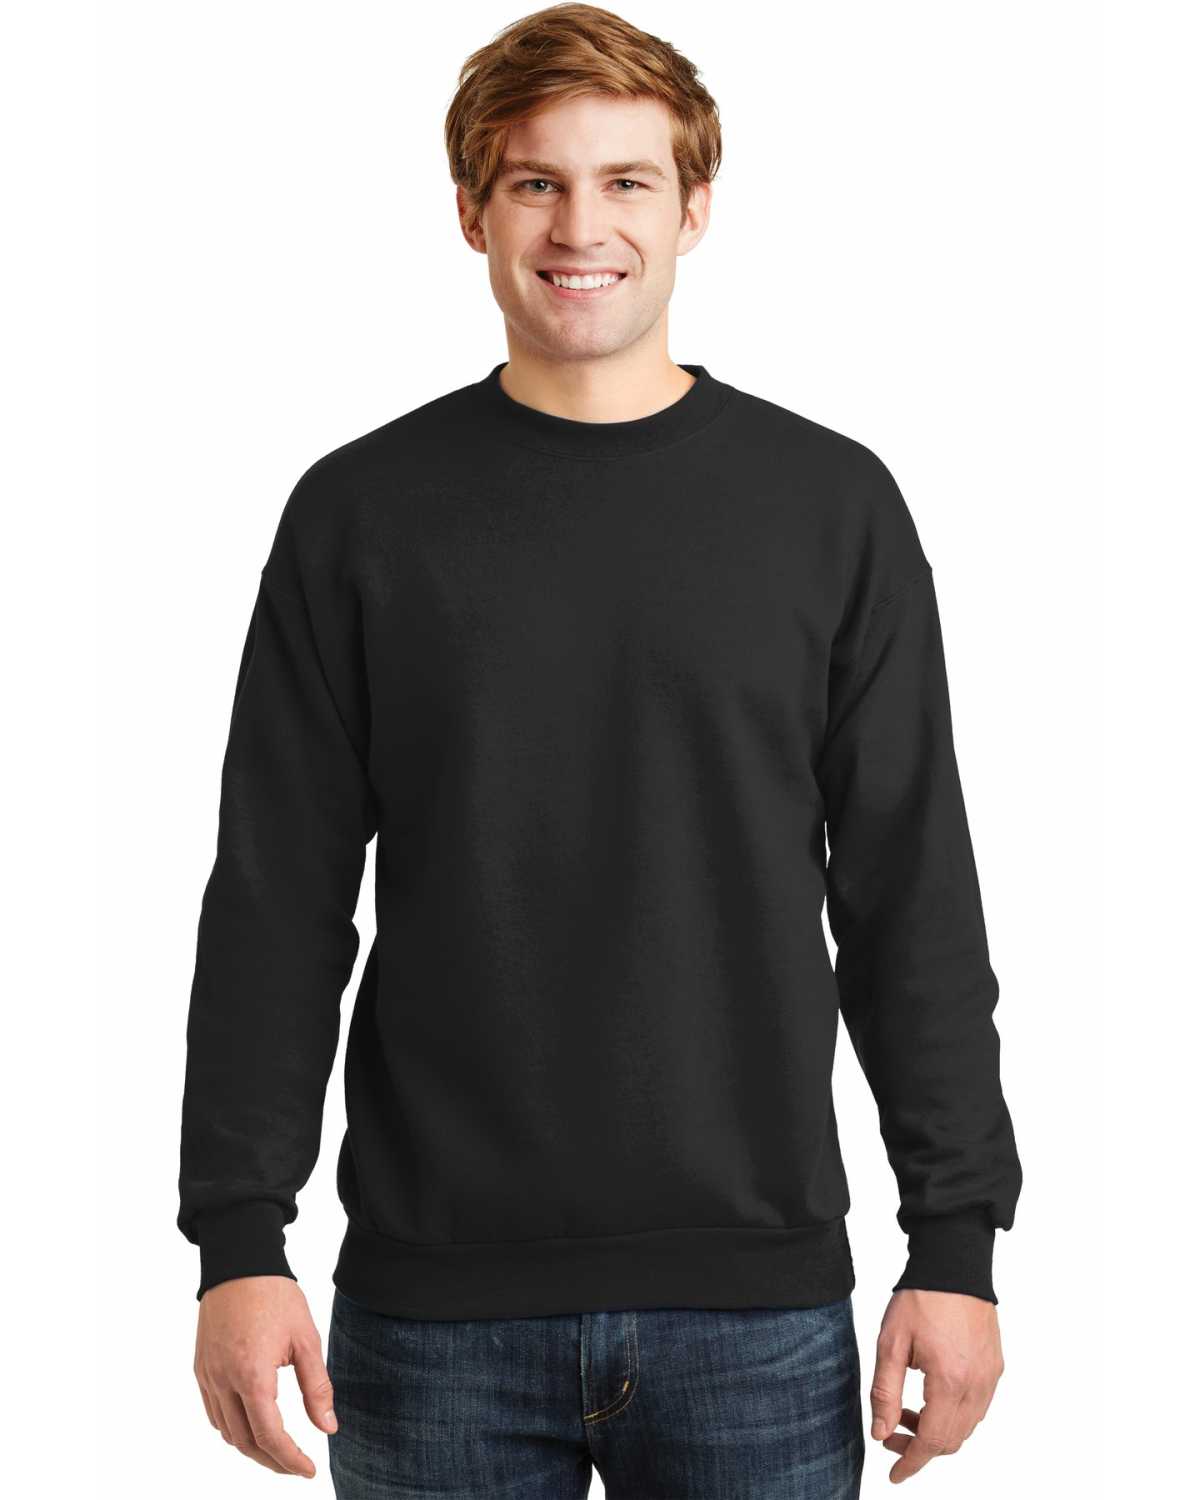 Hanes P160 EcoSmart Crewneck Sweatshirt on discount | ApparelChoice.com